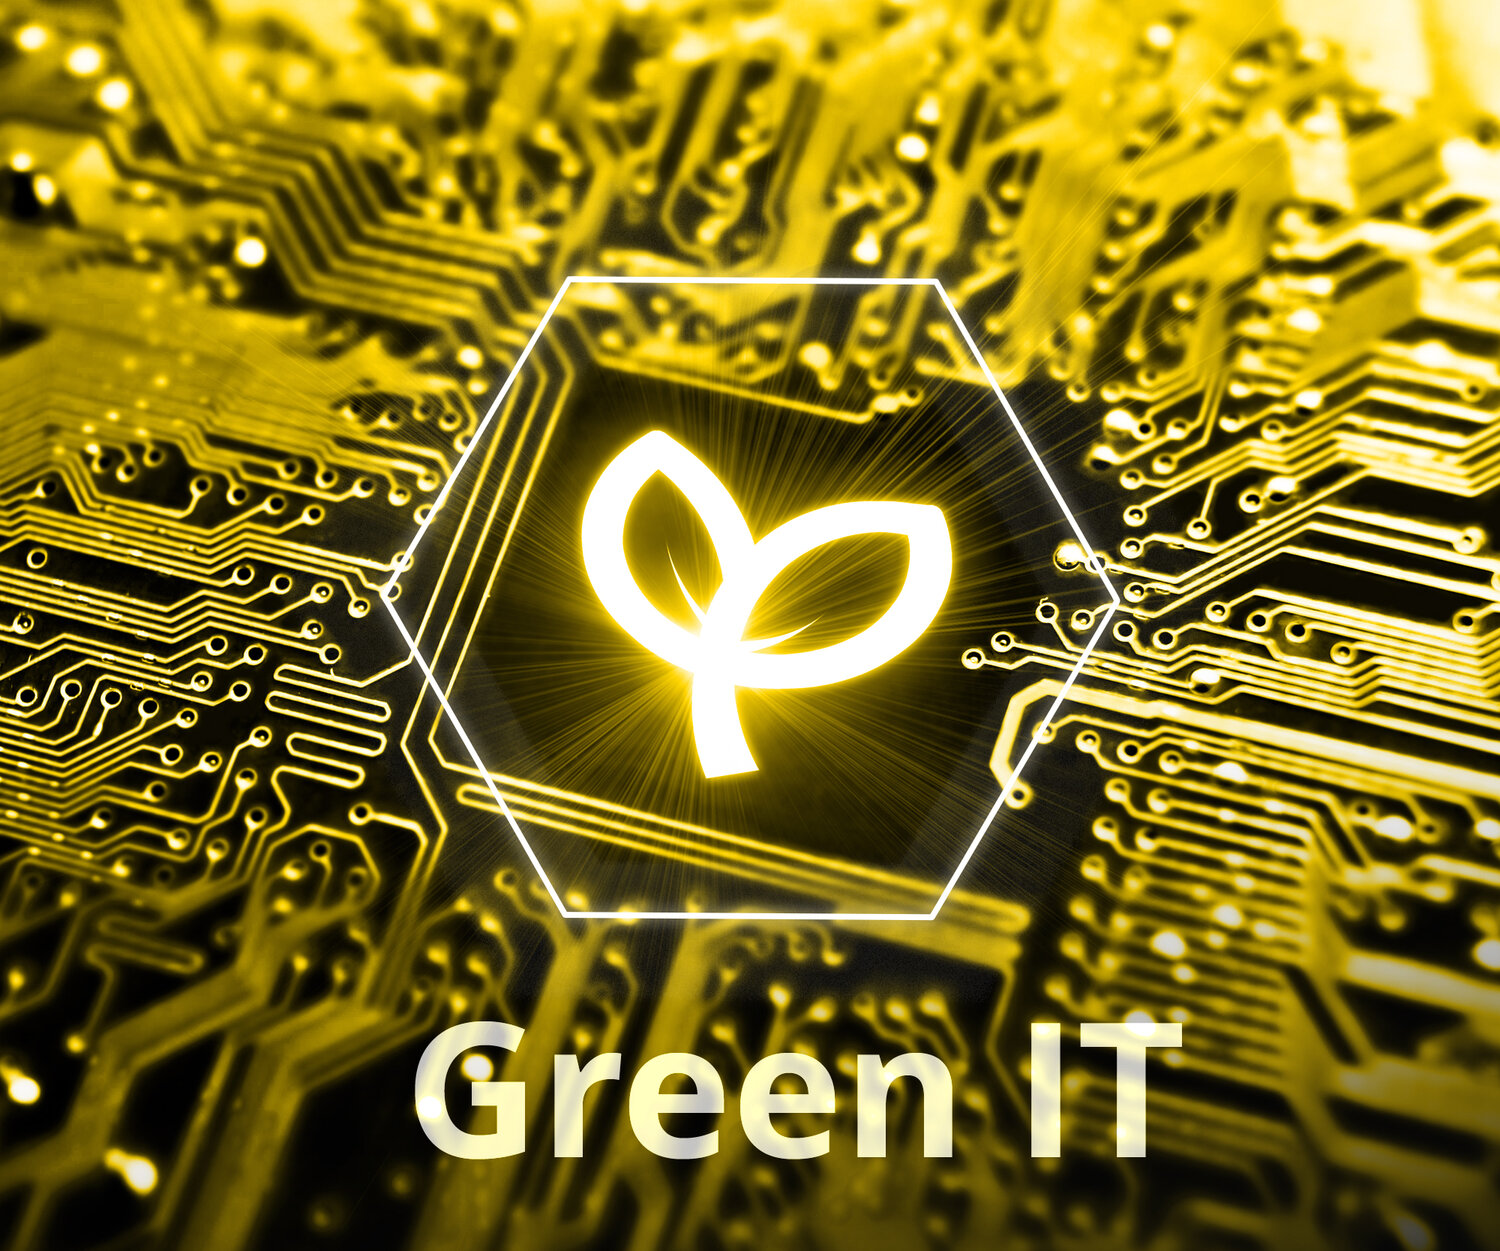 Green IT, Nachhaltigkeit in IT